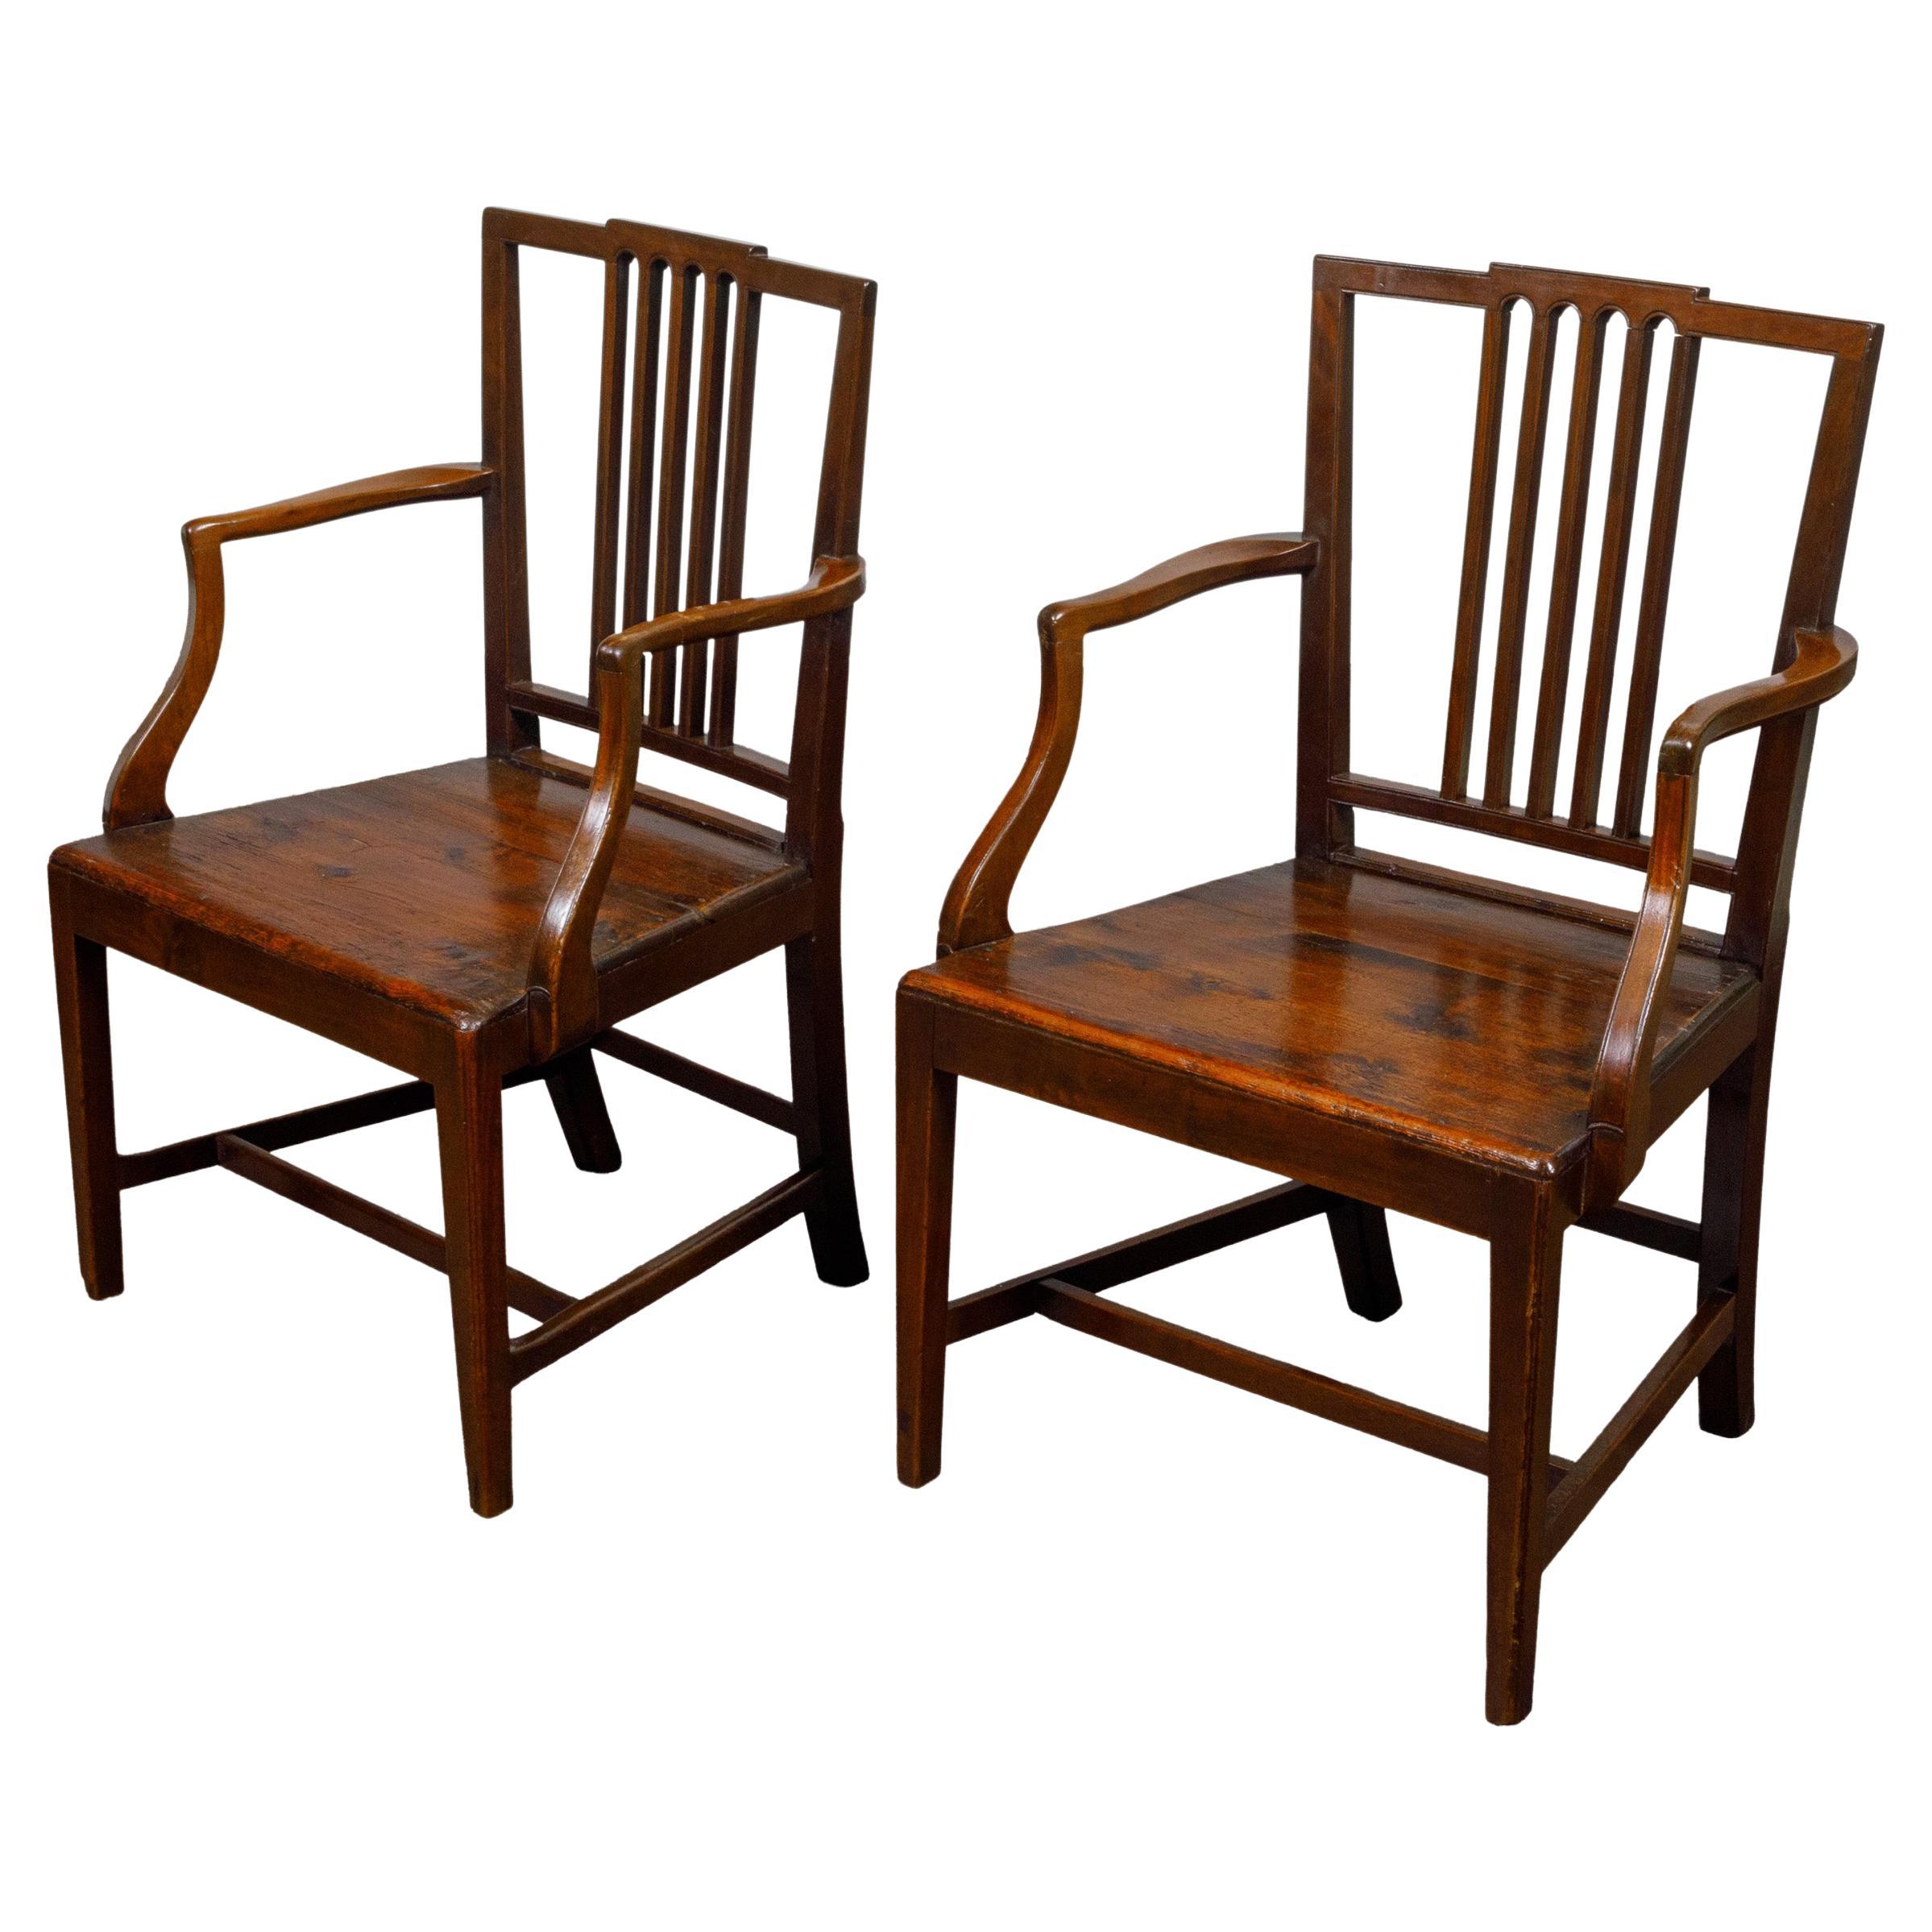 Paire de chaises anglaises du début du 19e siècle à assise en planches et accoudoirs à volutes